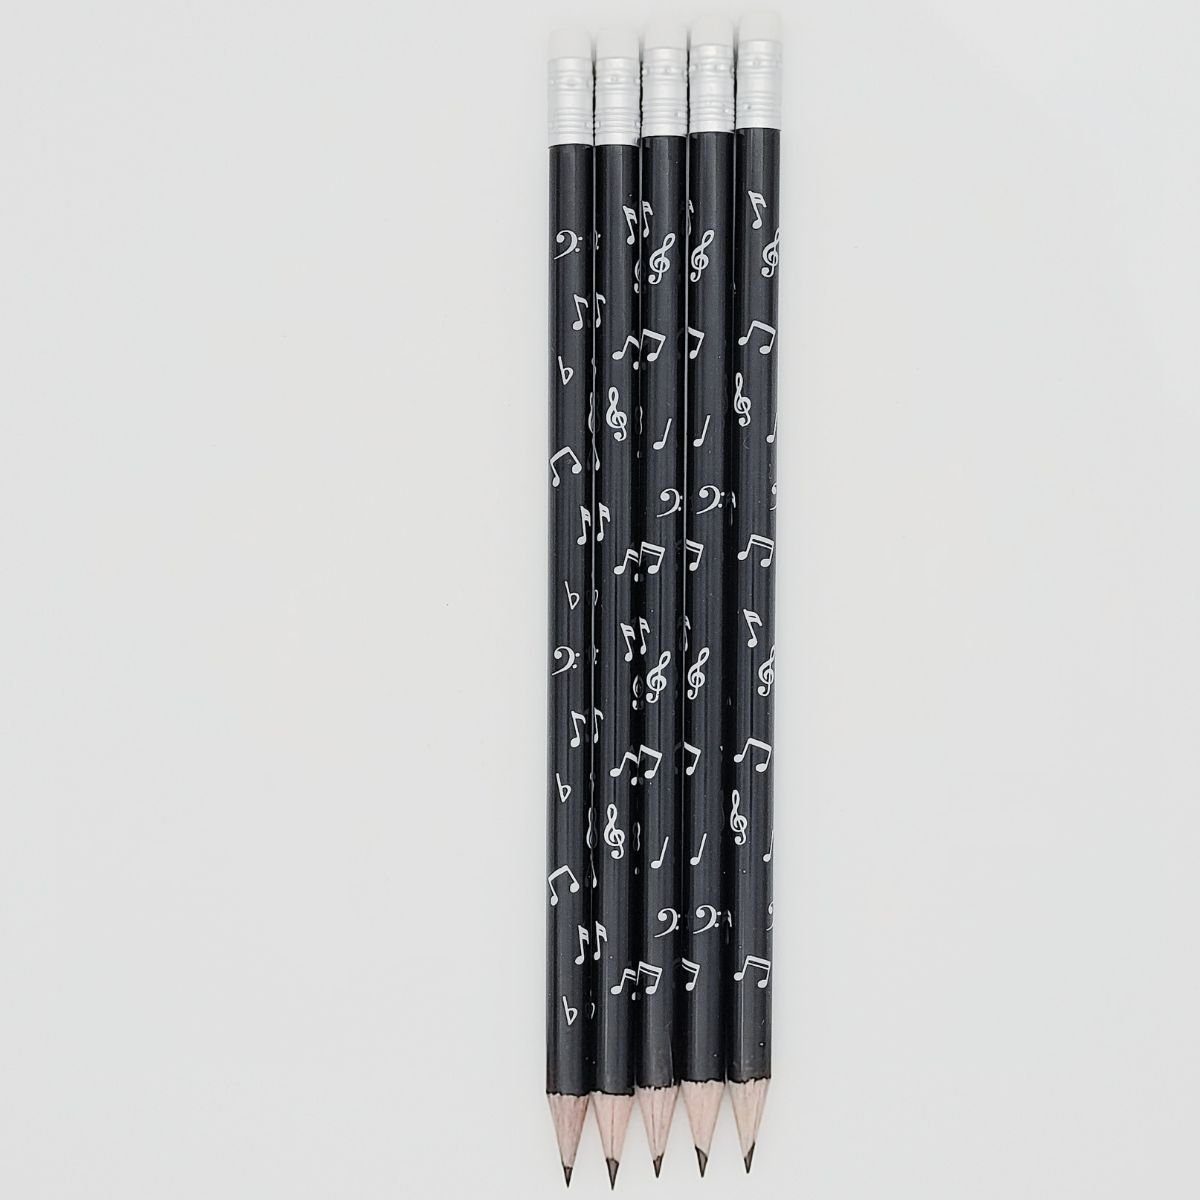 Musikboutique Bleistift, mit Noten-Mix-Motiv und Radiergummi, schwarz, 5 Stück